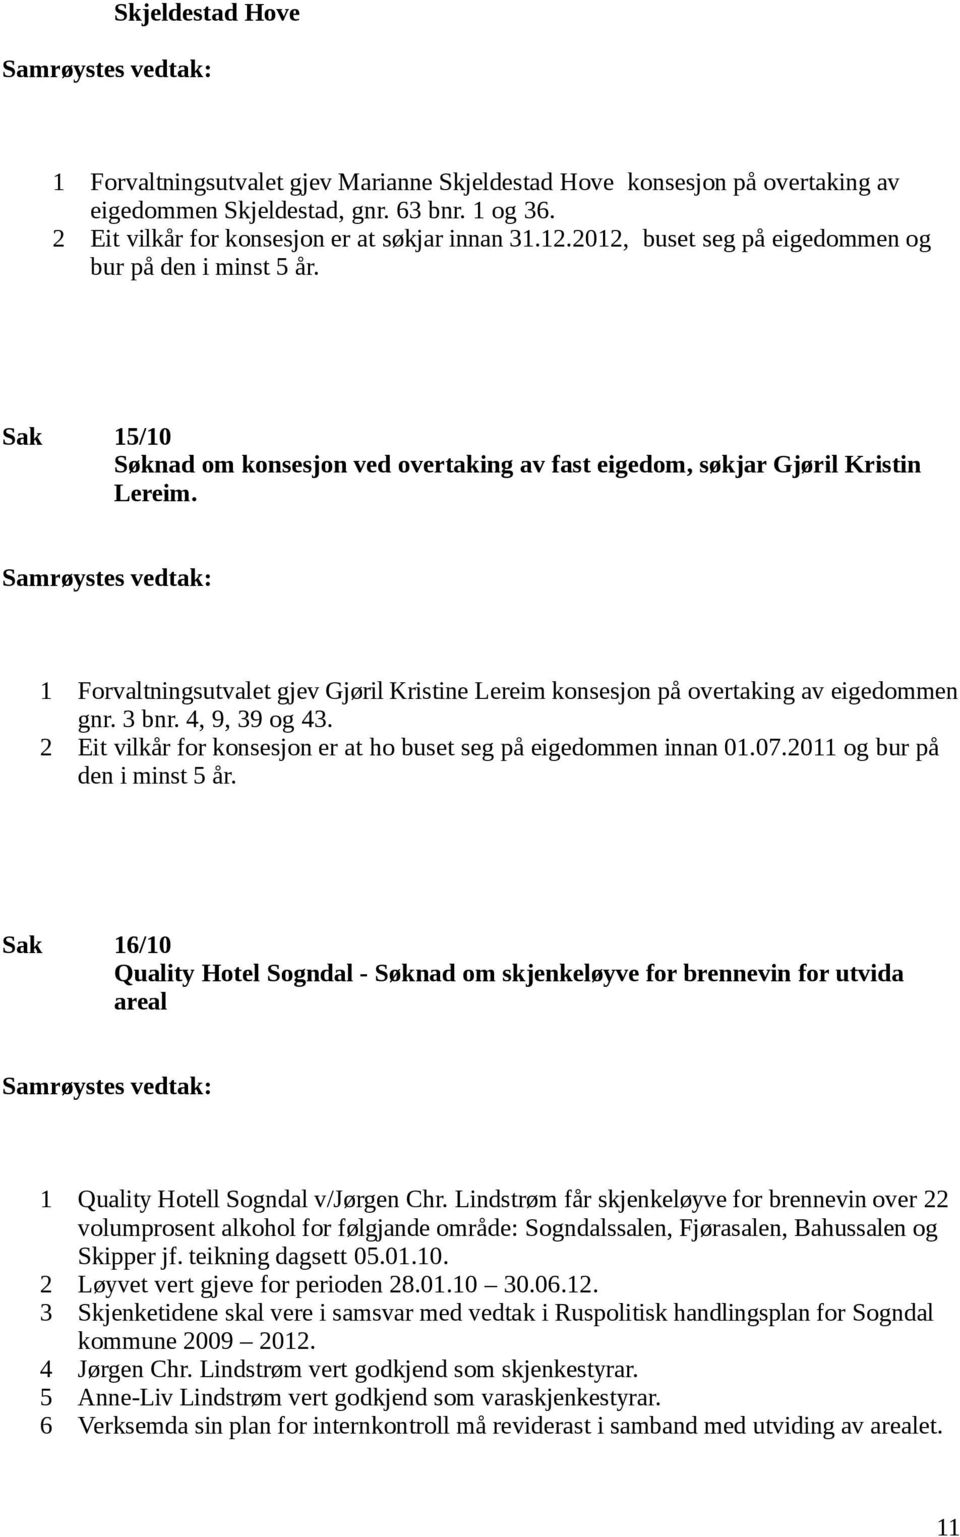 1 Forvaltningsutvalet gjev Gjøril Kristine Lereim konsesjon på overtaking av eigedommen gnr. 3 bnr. 4, 9, 39 og 43. 2 Eit vilkår for konsesjon er at ho buset seg på eigedommen innan 01.07.